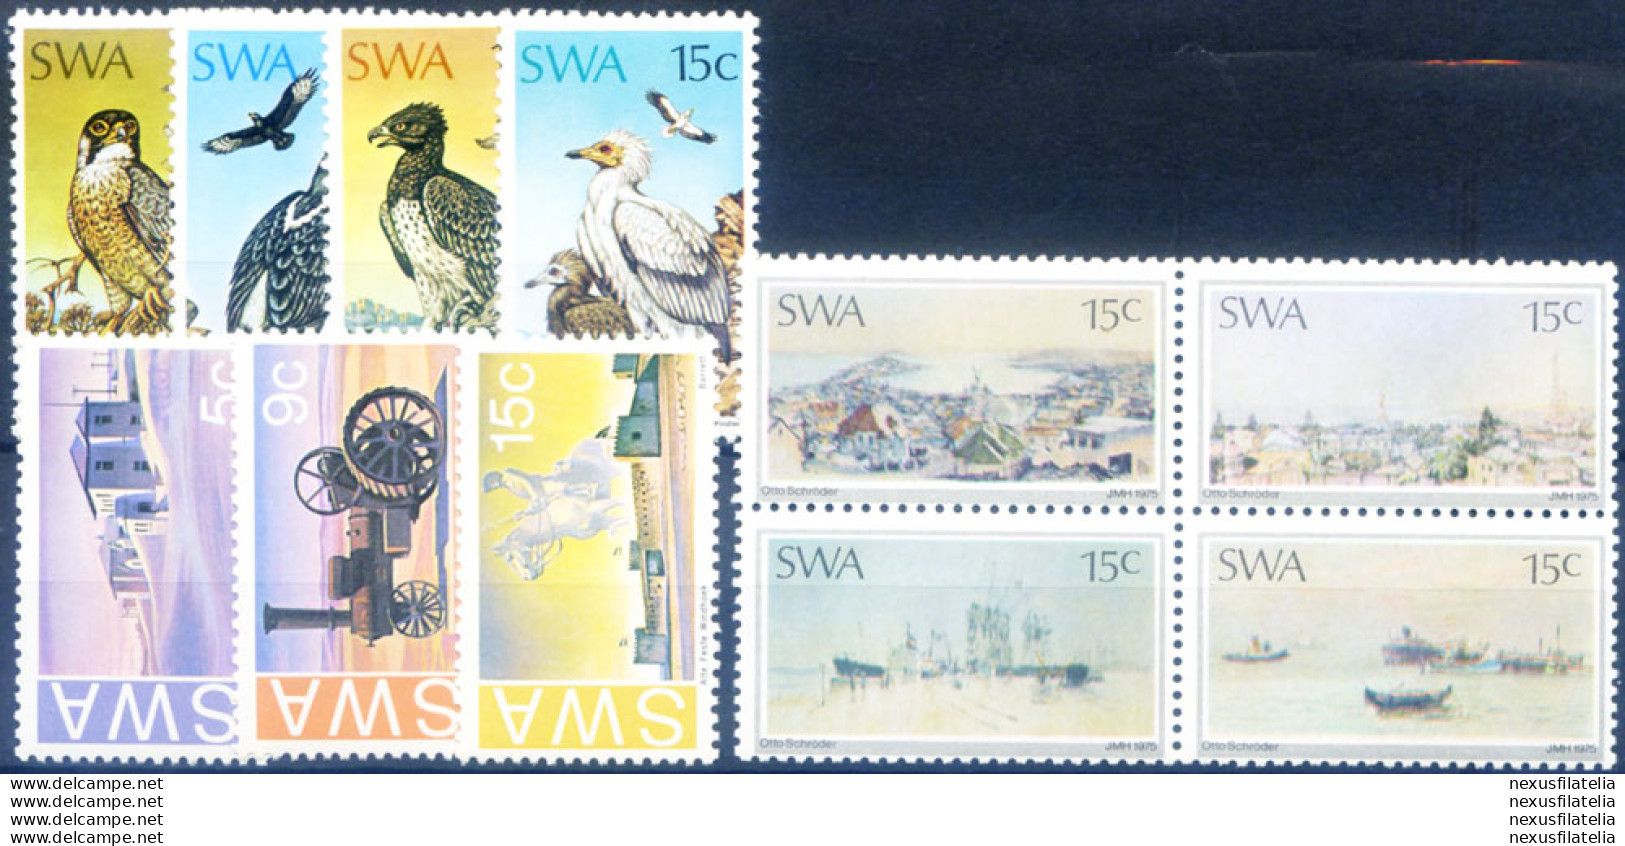 Annata Completa 1975. - Namibie (1990- ...)